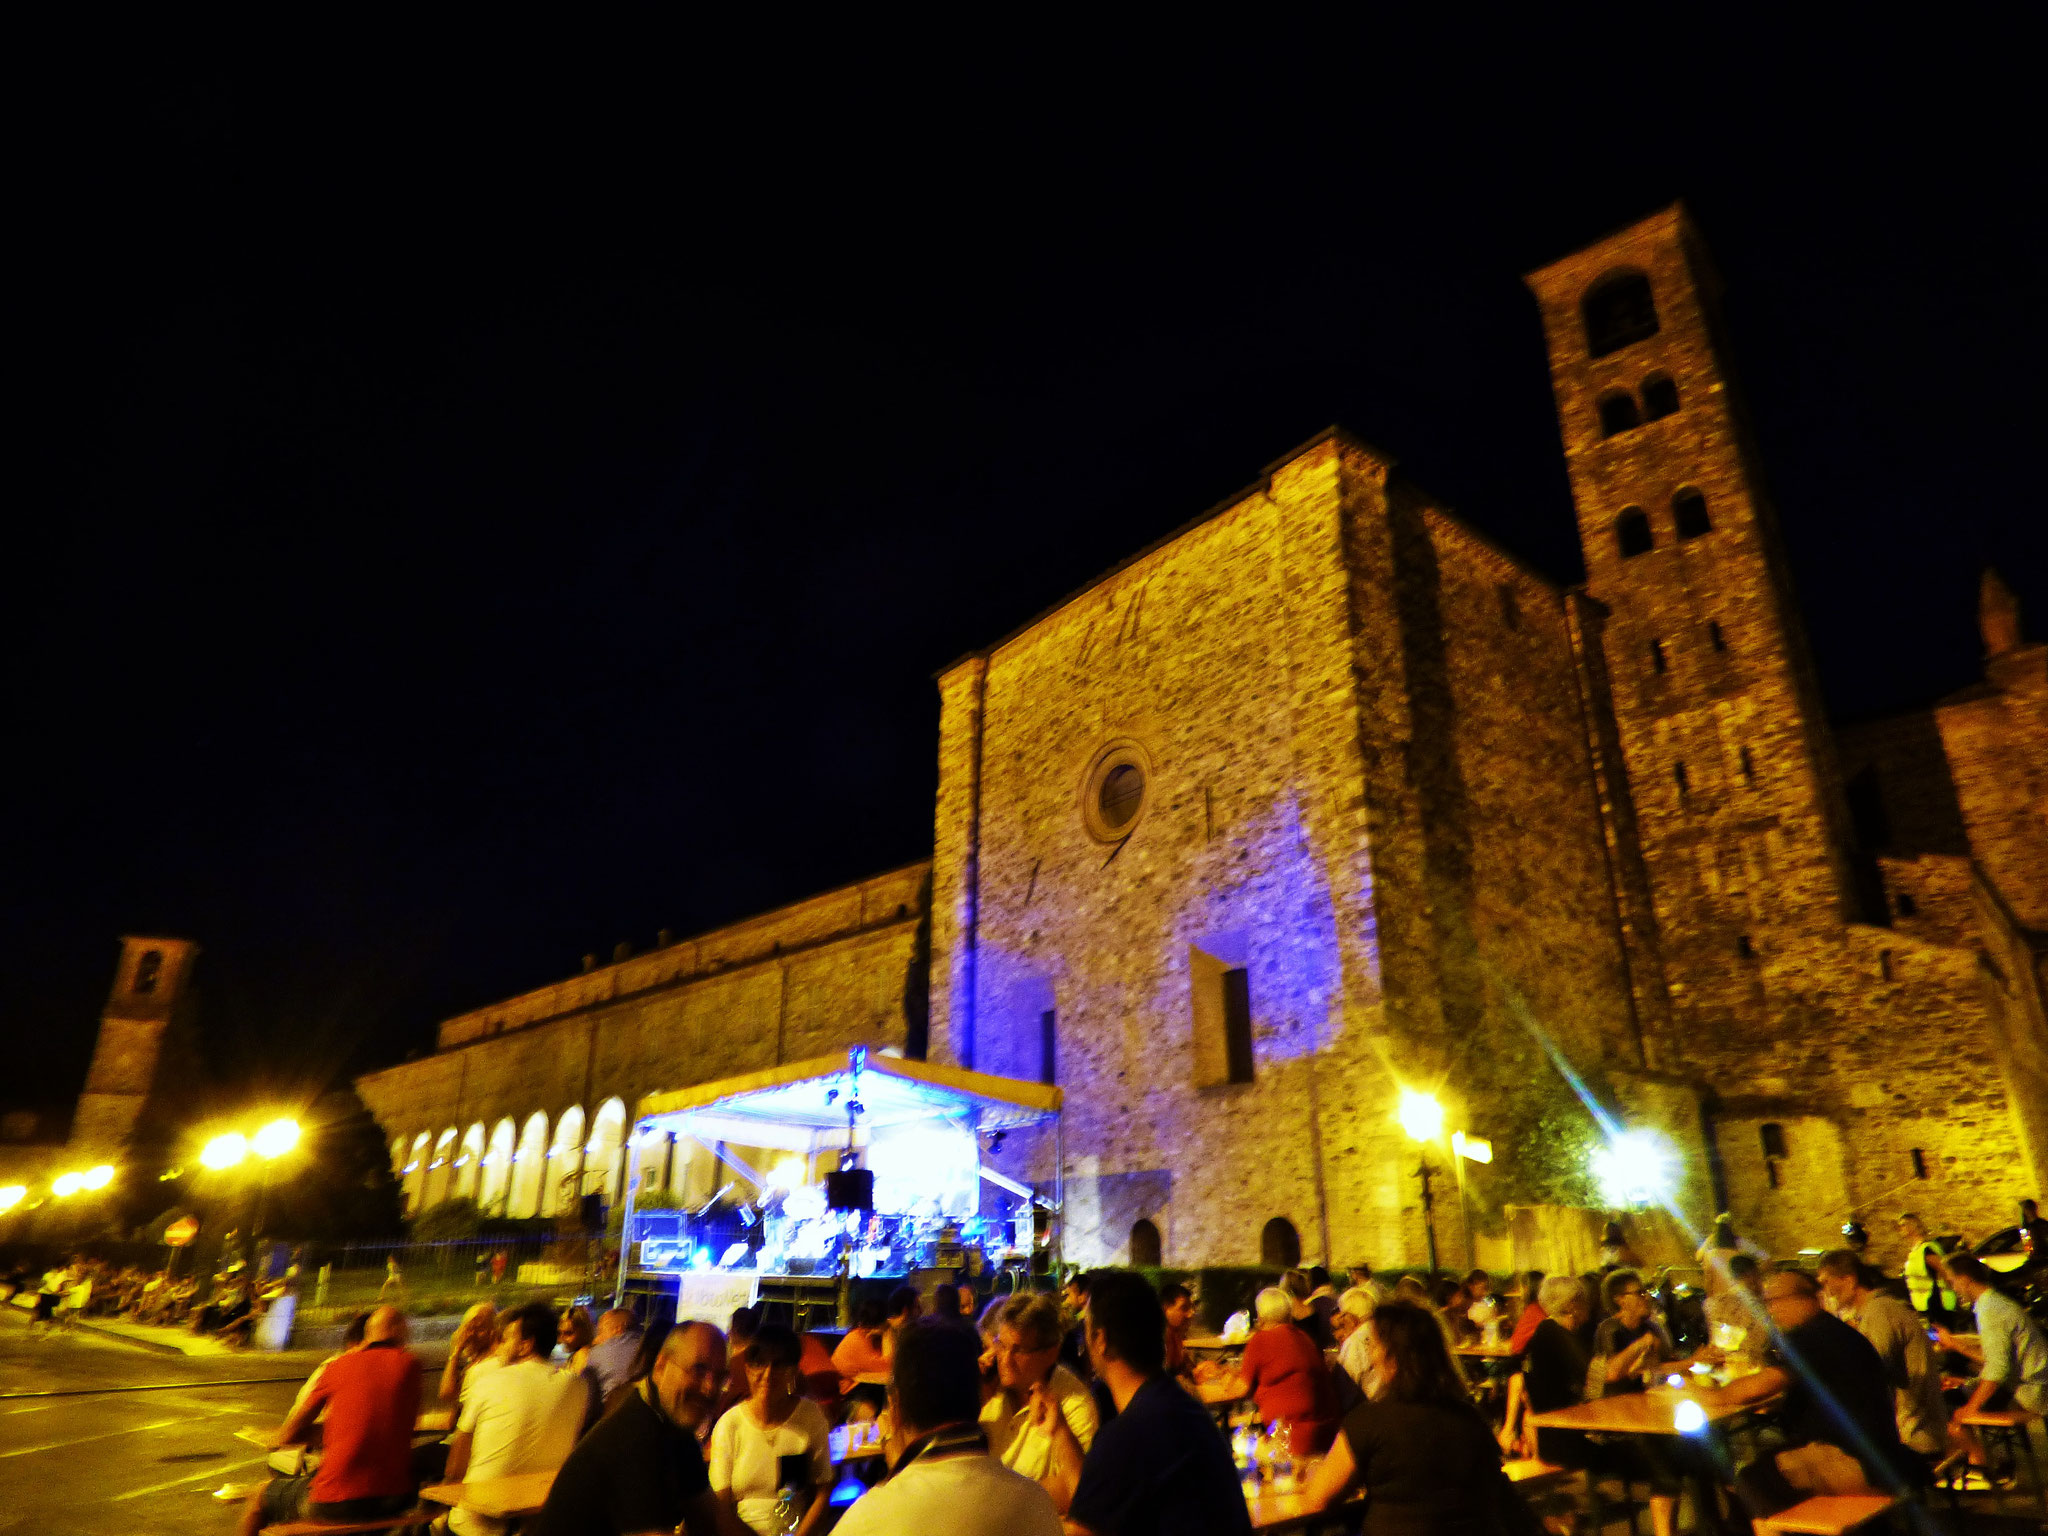 Bobbio  6 luglio 2019     Concerto in piazza santa Fara  con  I CANI DELLA BISCIA e I BELLI FUORI  dalle ore 22:00